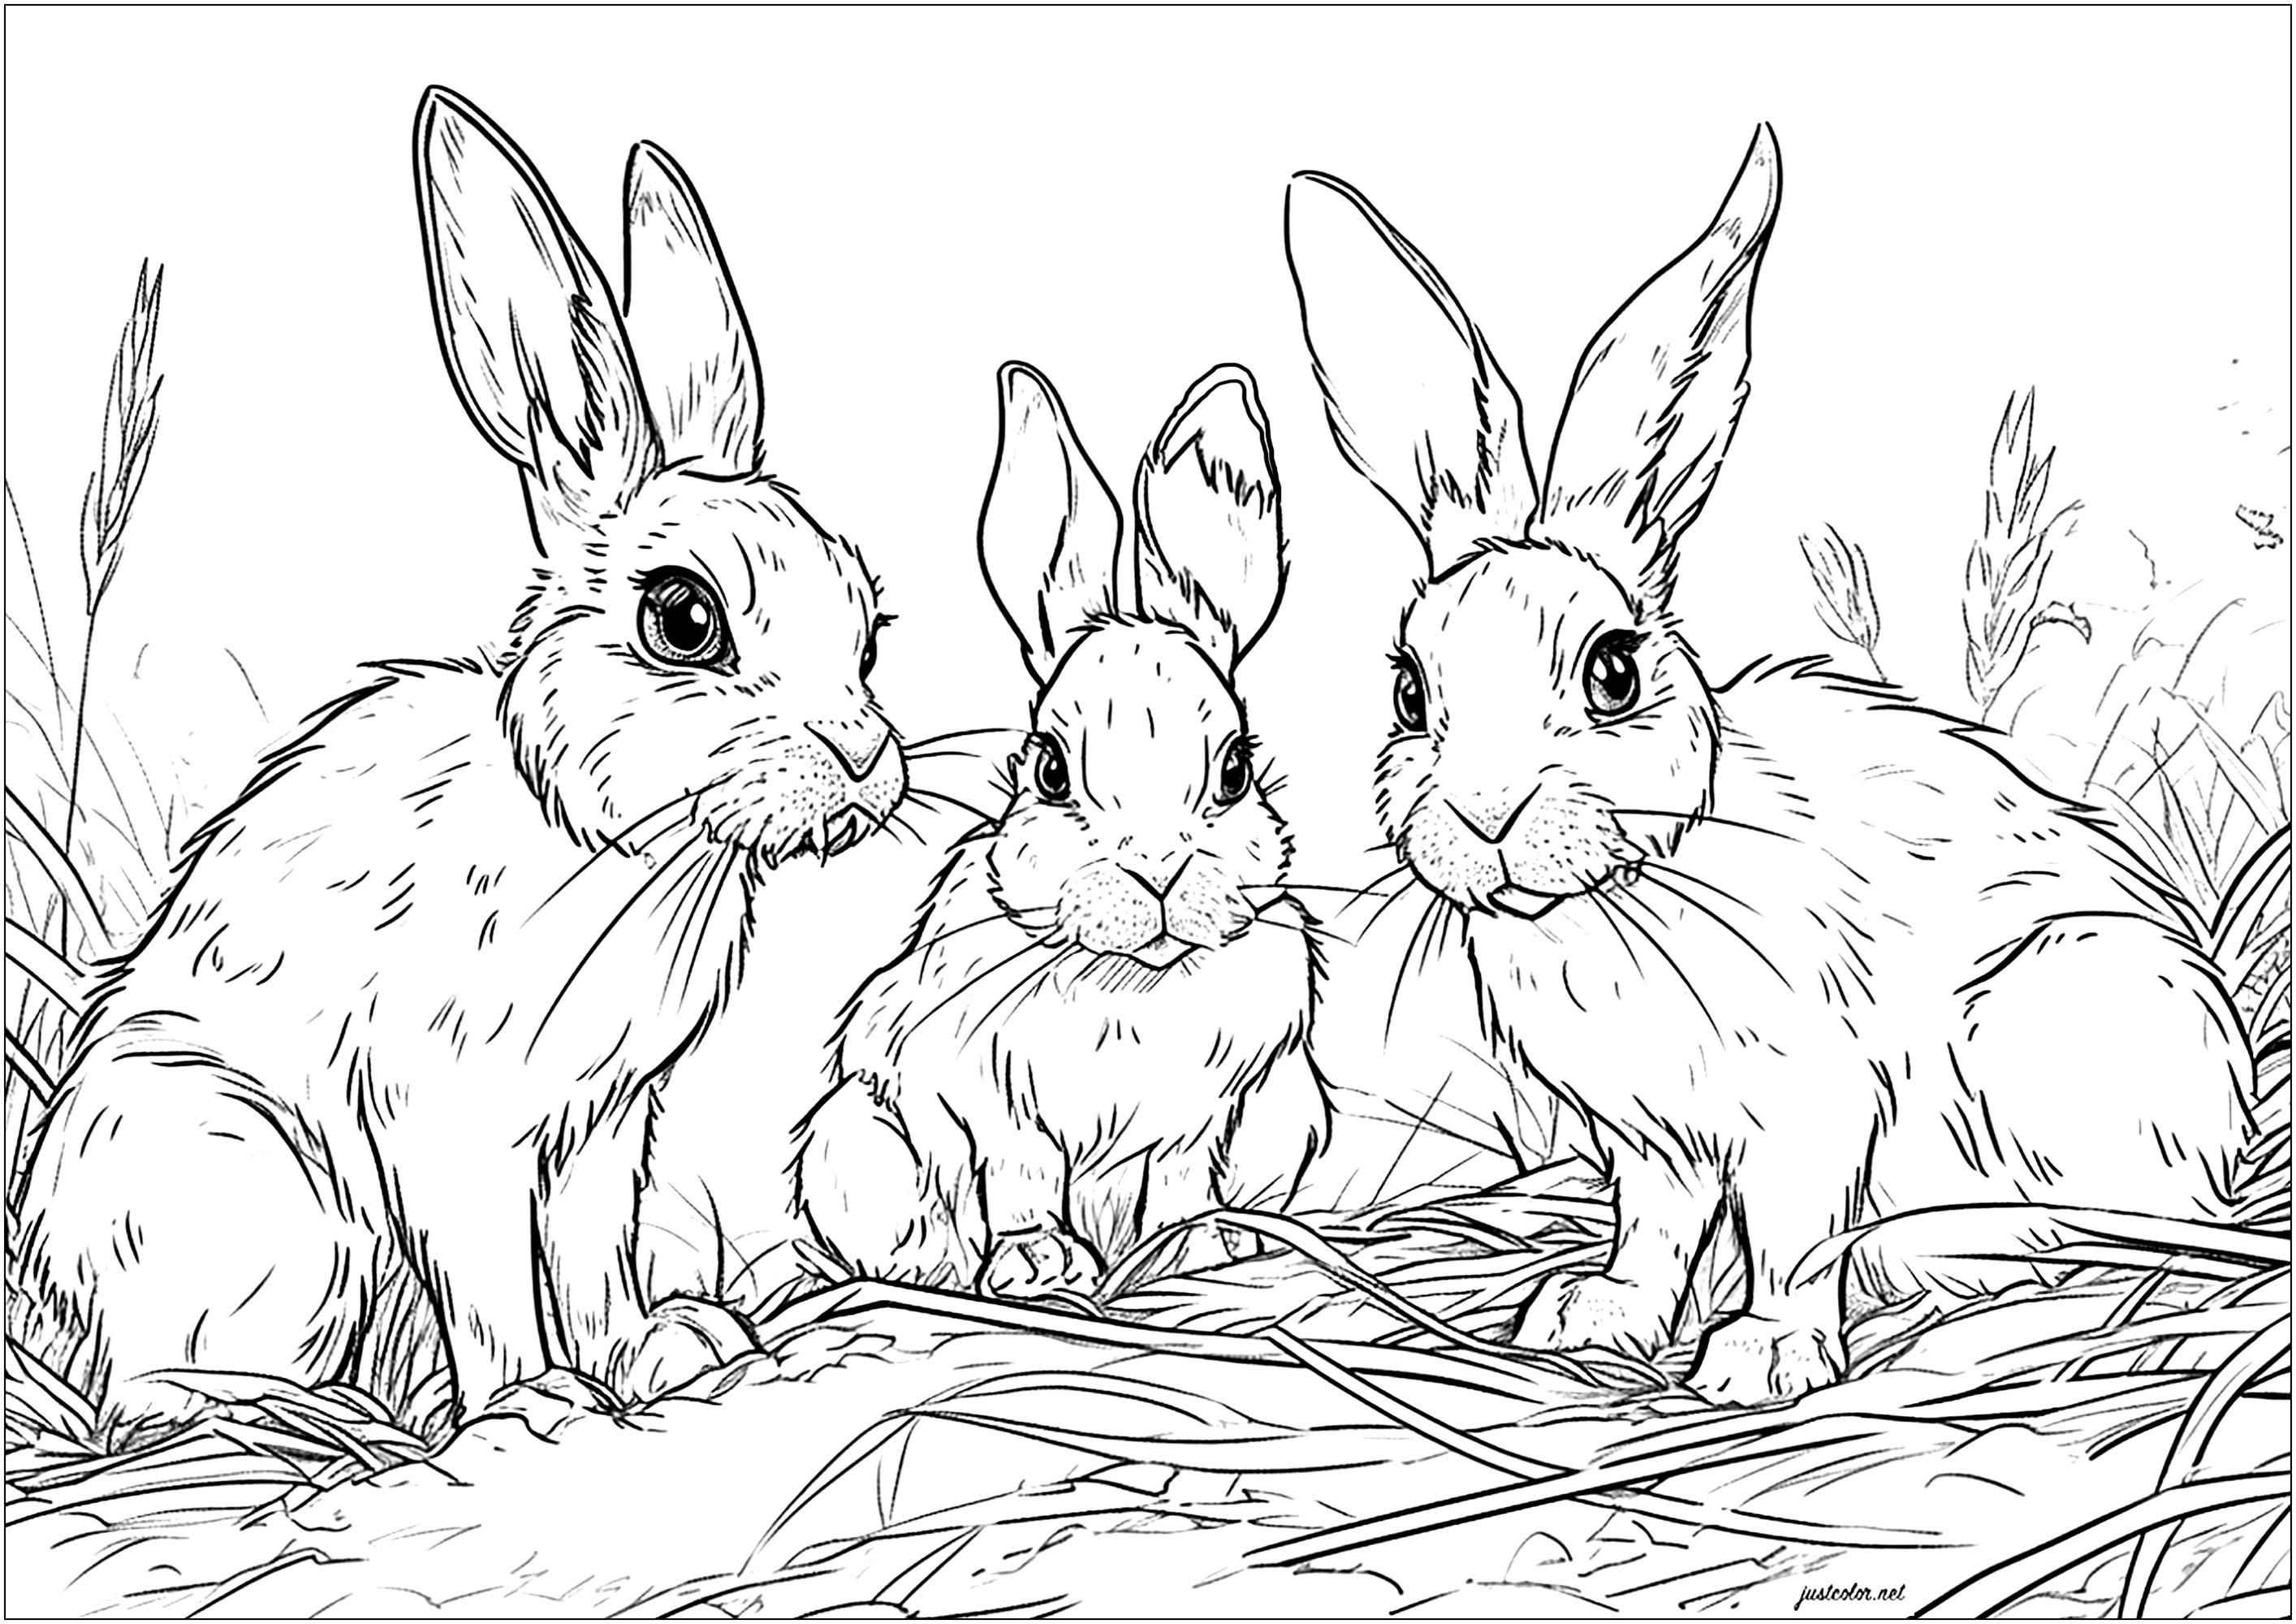 Trois jolis lapins sur de la paille